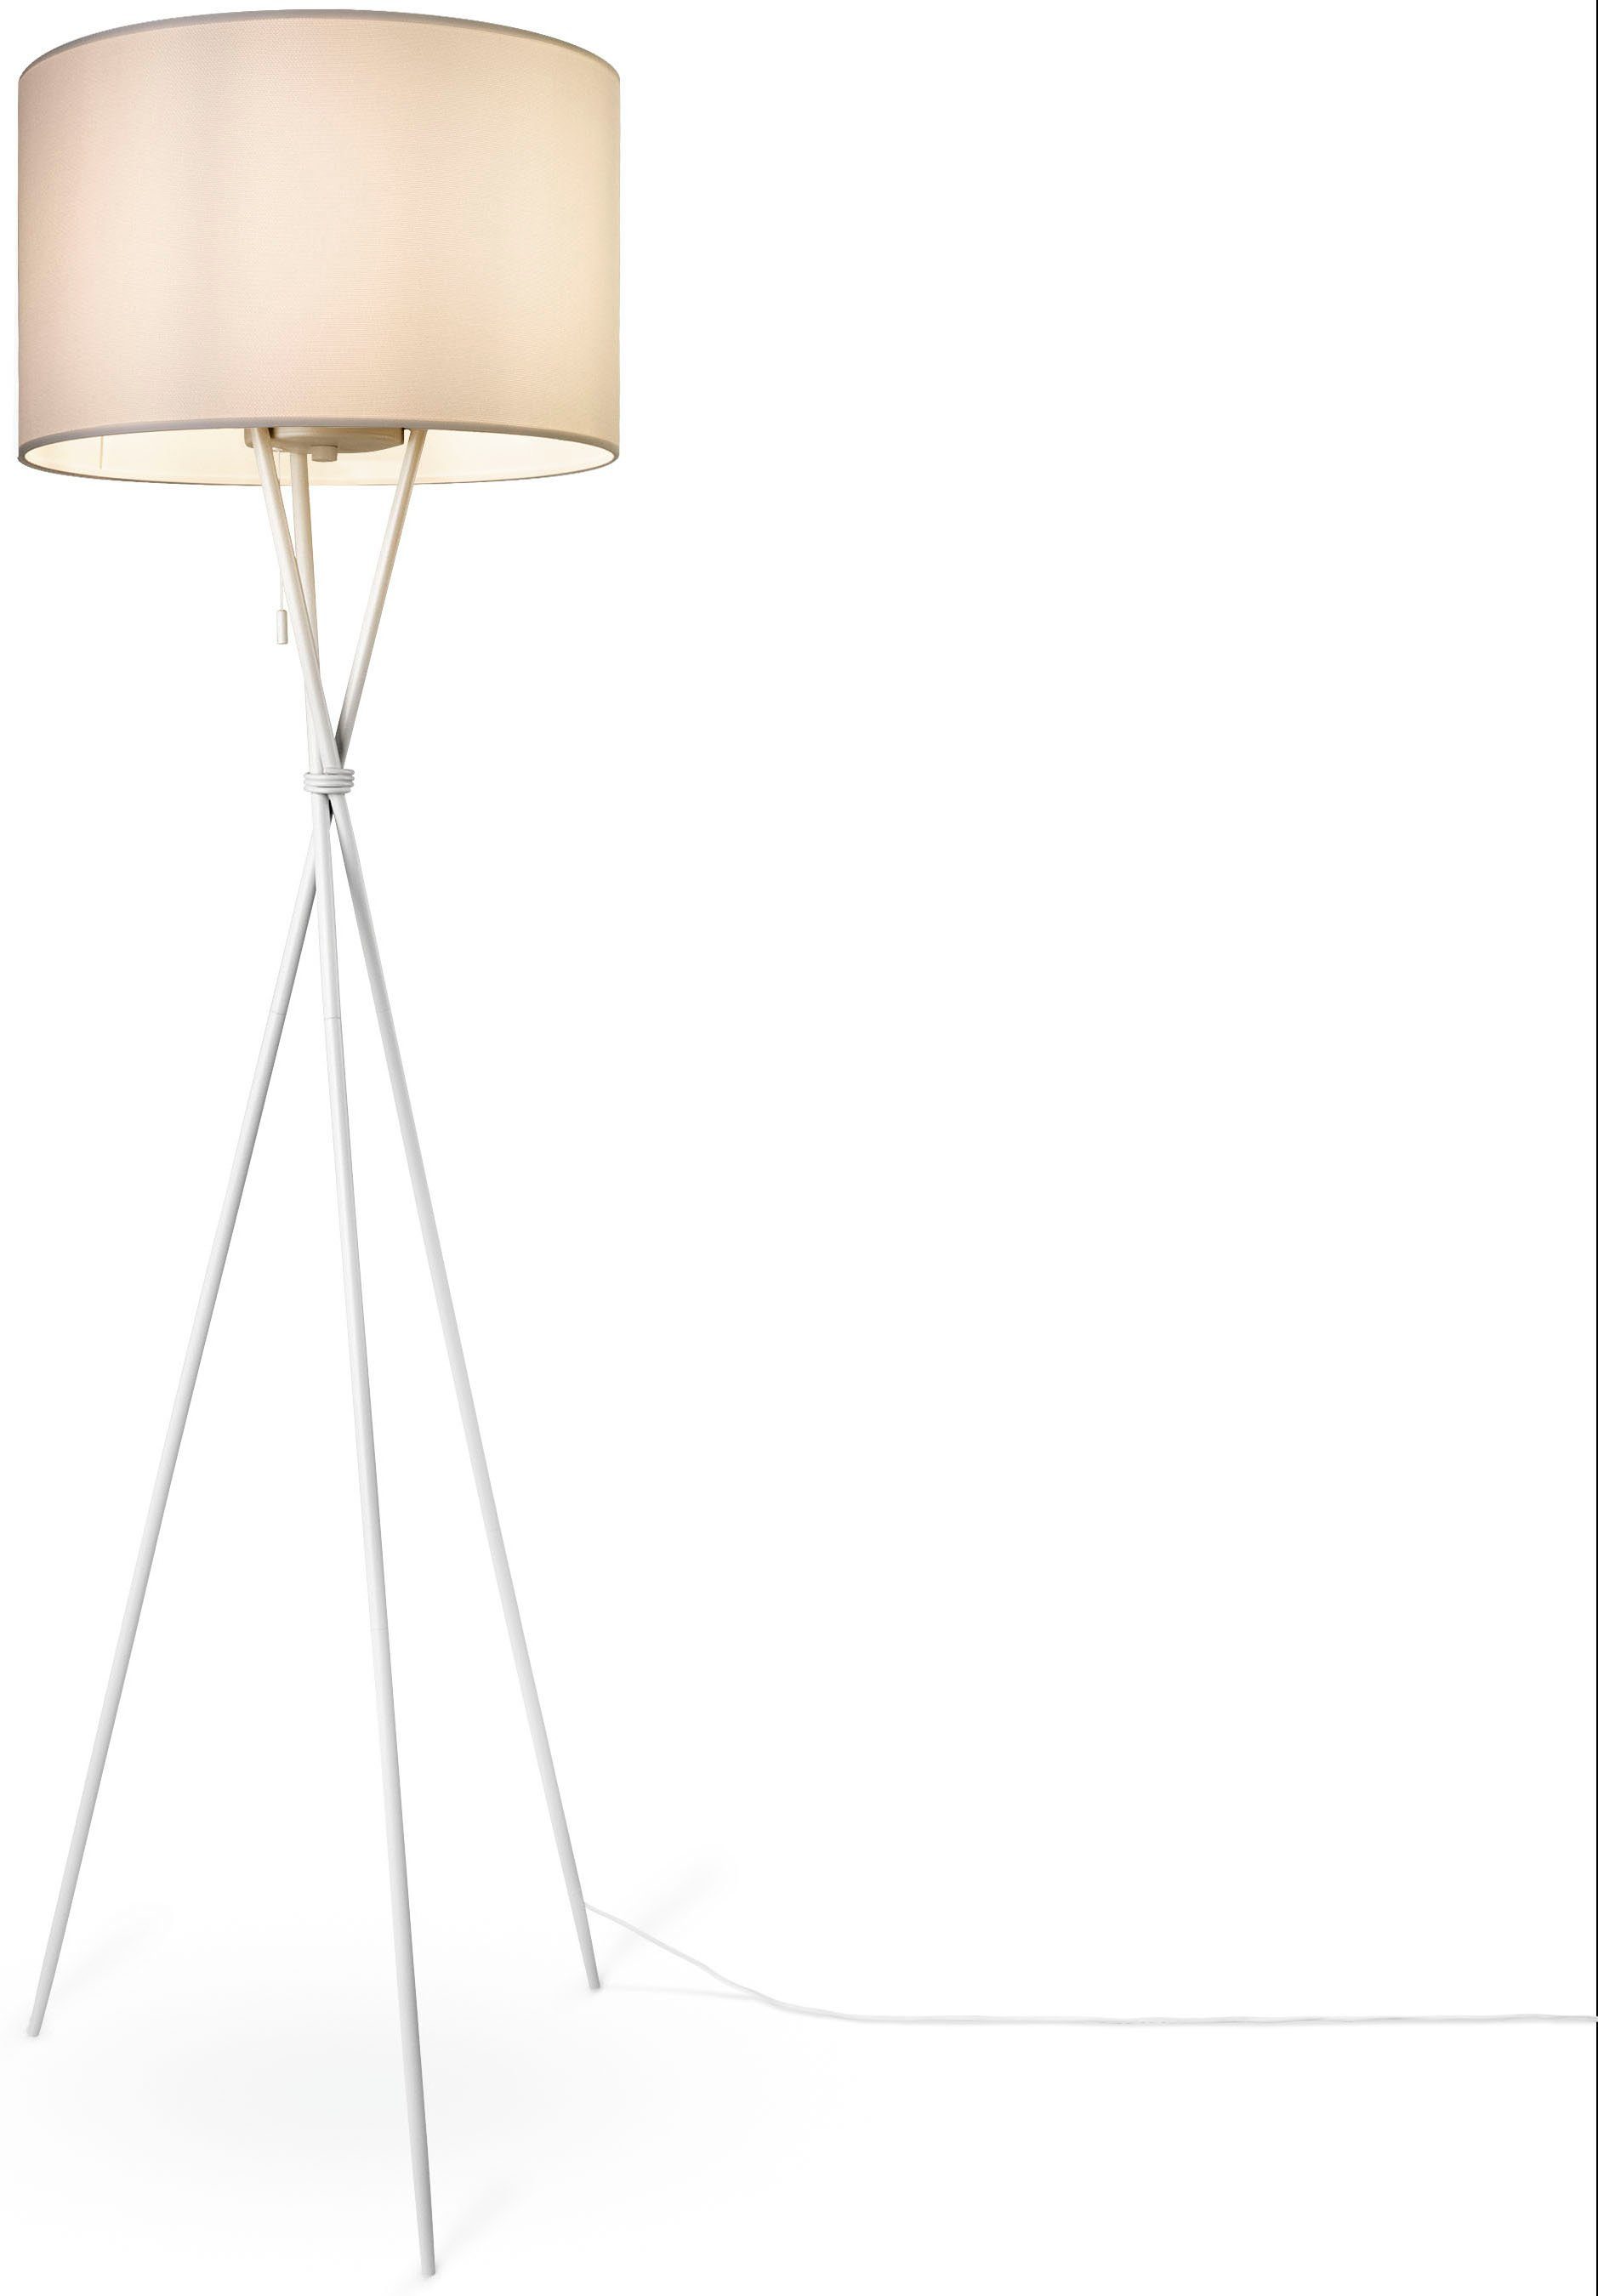 COLOR, Textil UNI Stehlampe Home KATE Paco weiß E27 Schirm Dreibein Standleuchte CANVAS Leuchtmittel, ohne weiß Wohnzimmer Stoffschirmlampe